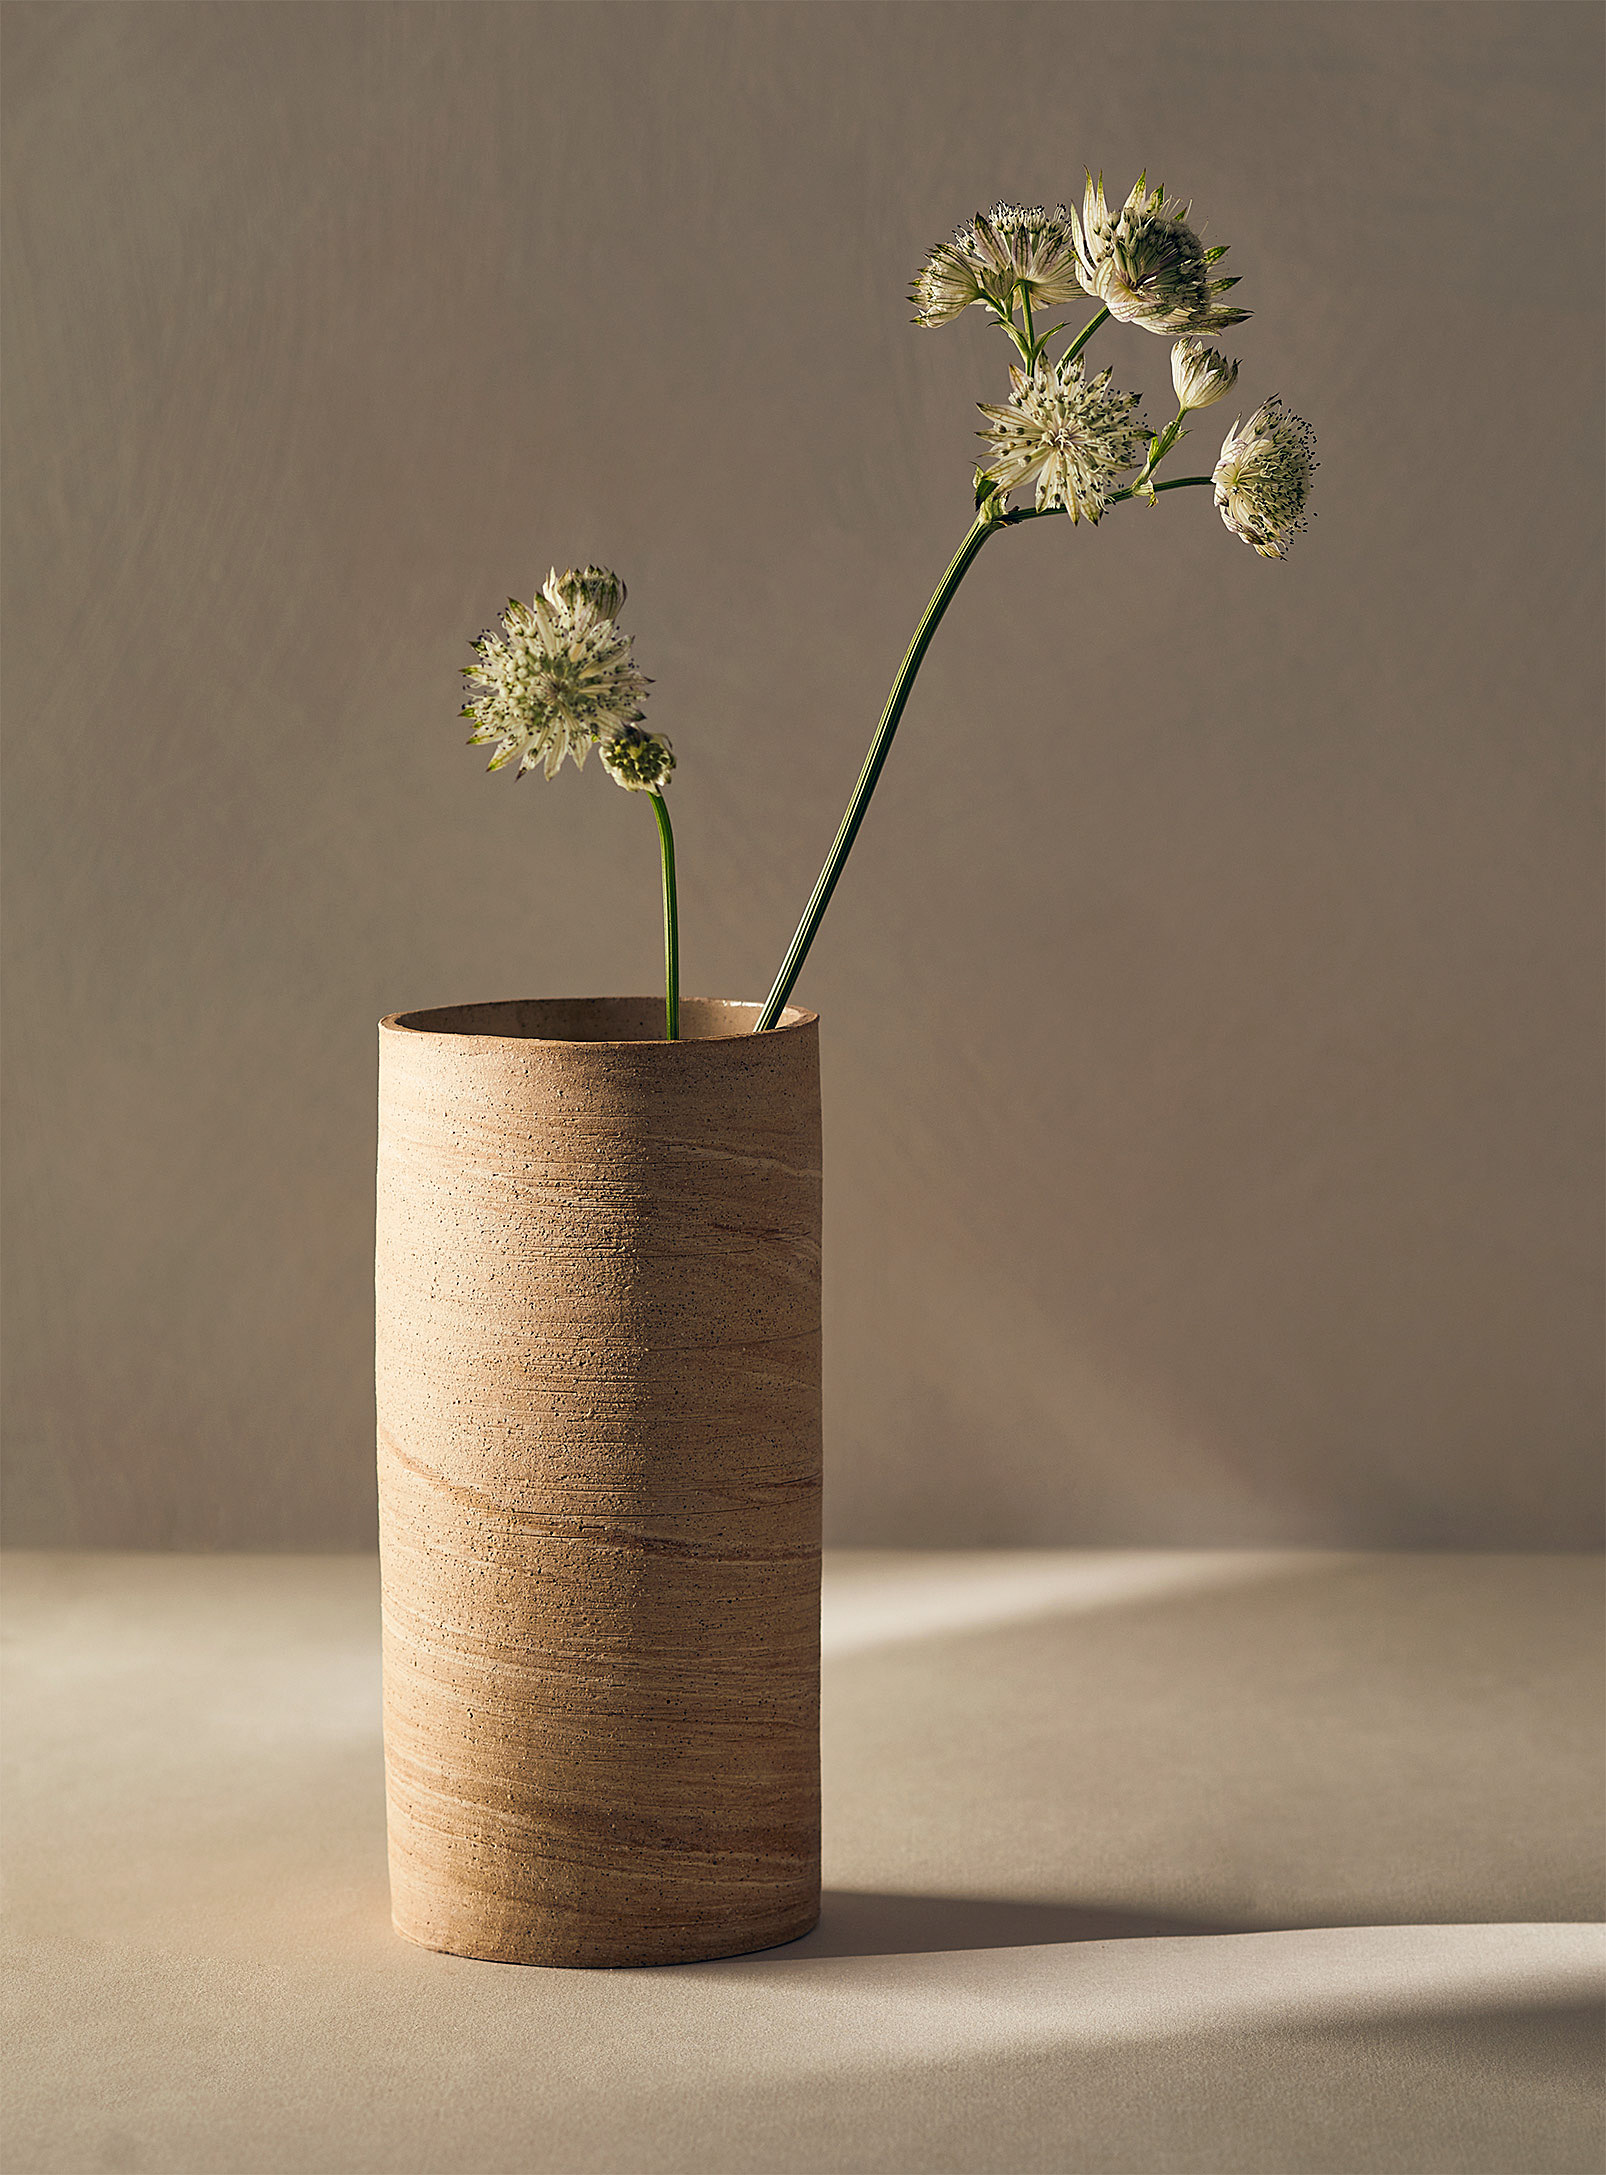 Ceramics by LJM - Le vase cylindrique en grès no 11 15,25 cm de hauteur